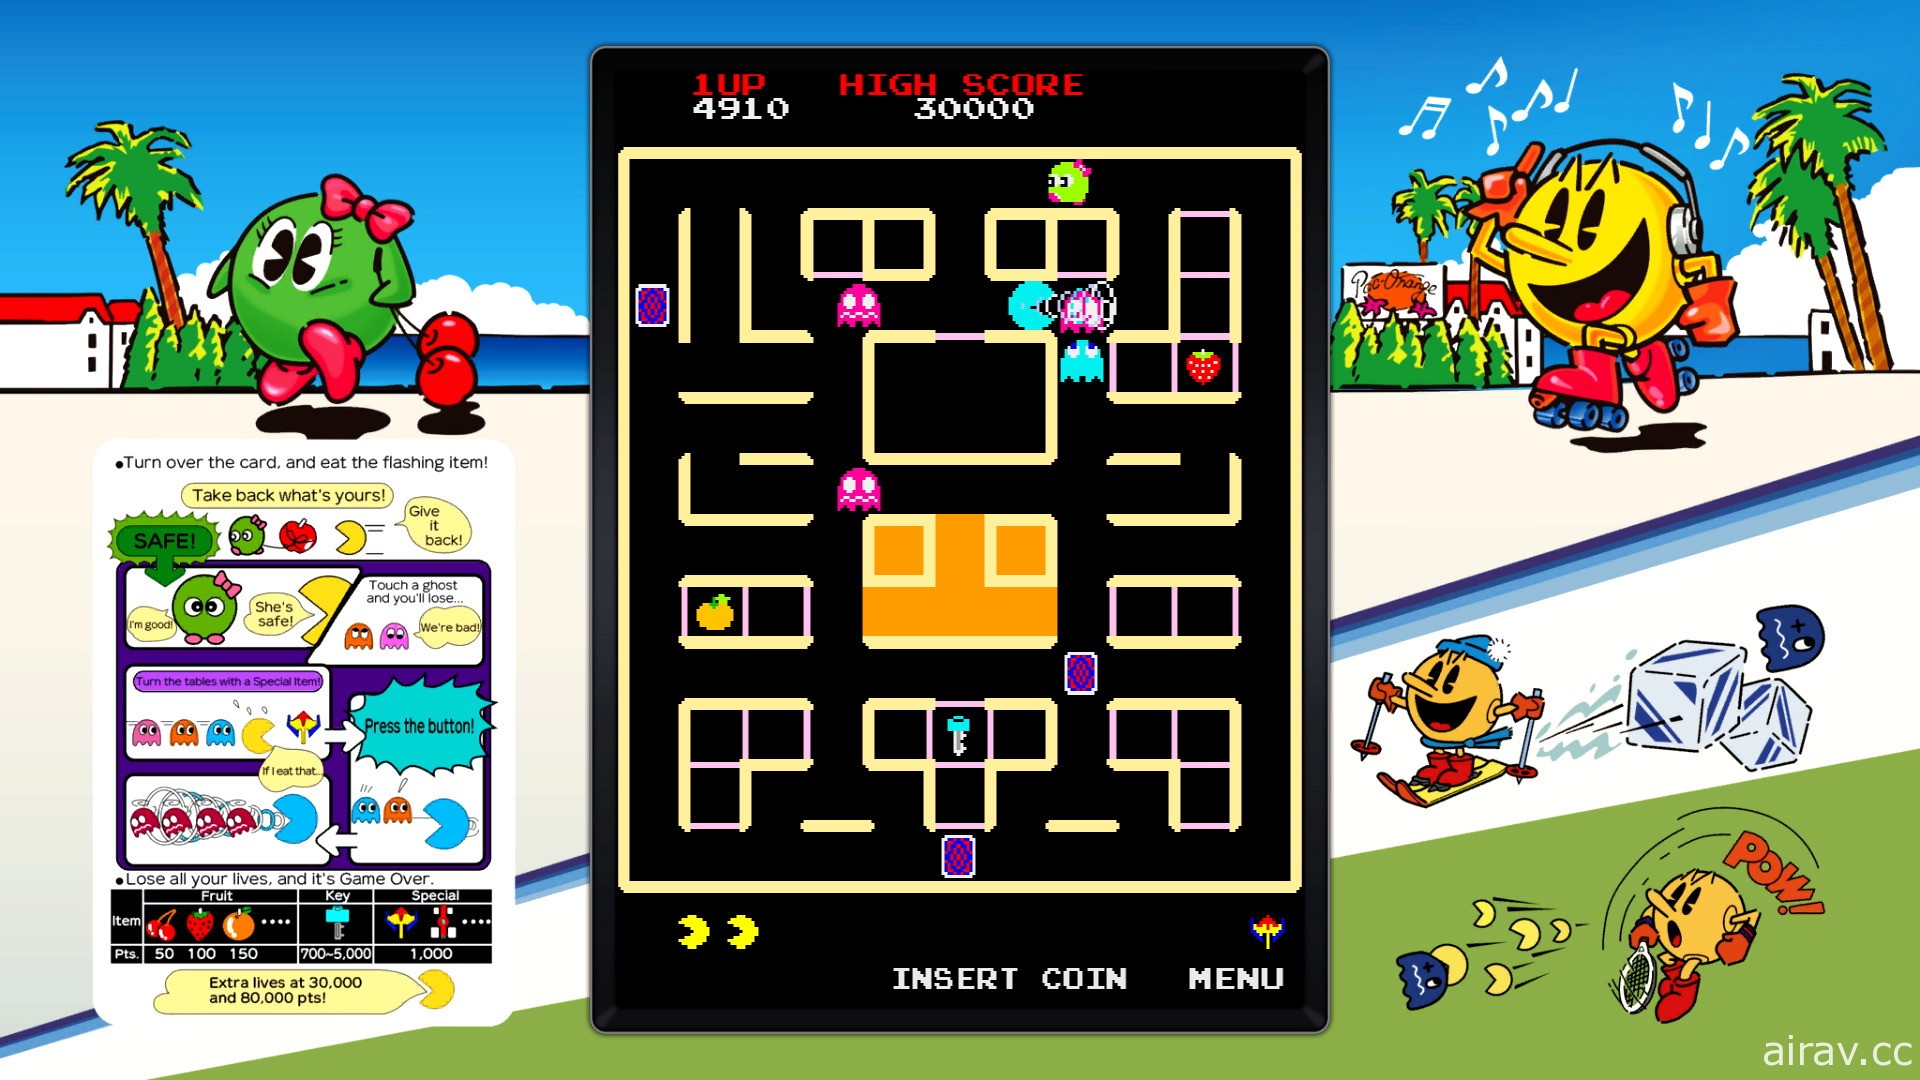 暢玩 14 款 PAC-MAN 經典名作！《吃豆人 博物館 +》數位版預定 2022 年推出